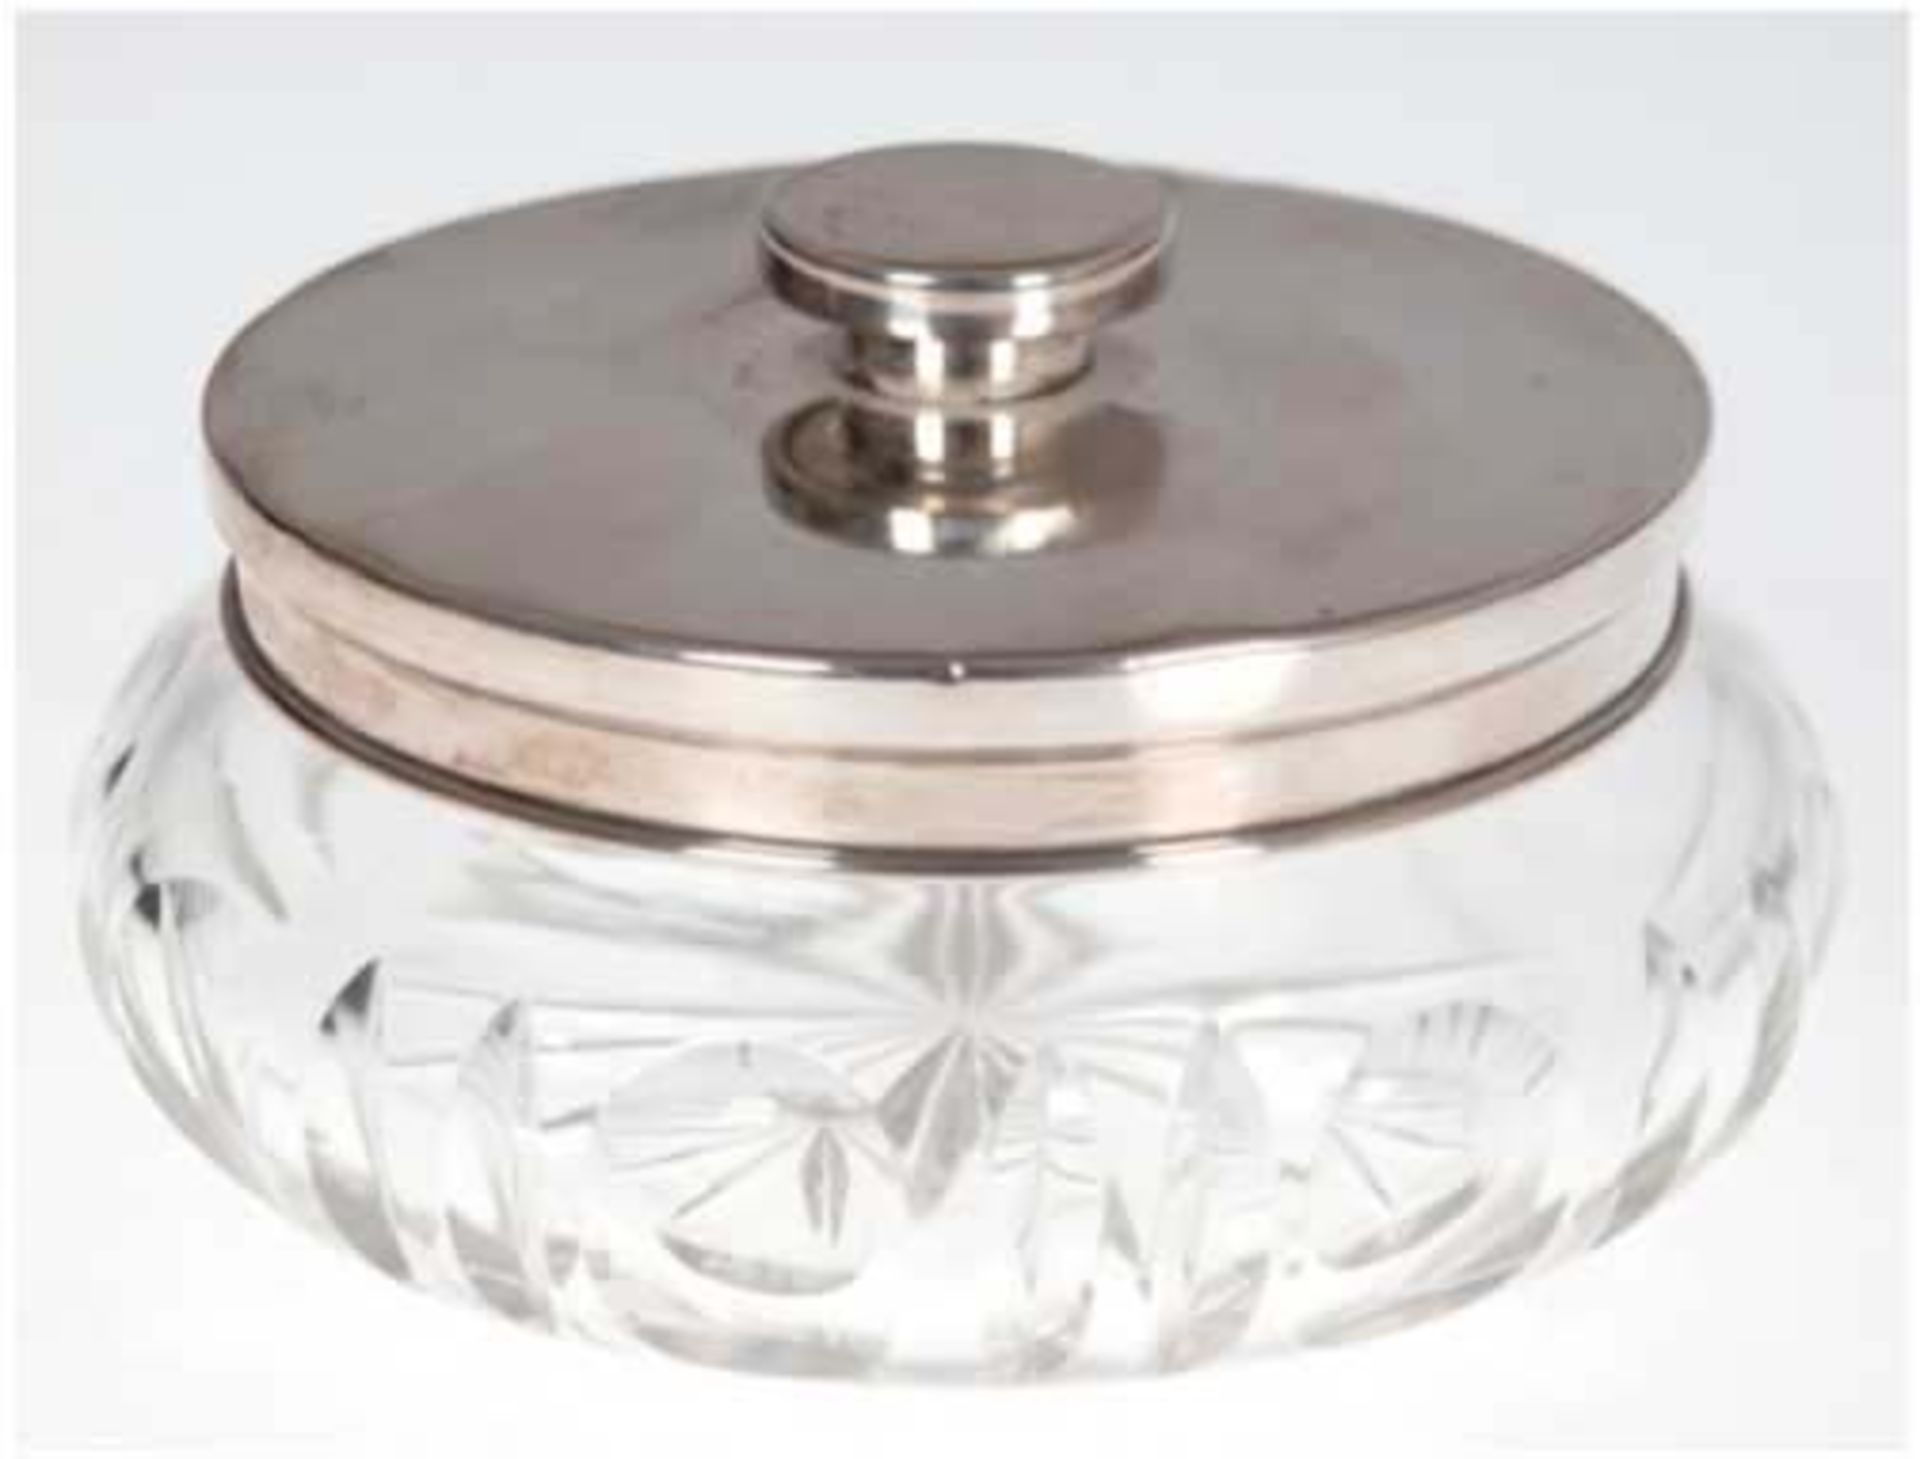 Deckeldose, Kristall mit 830er Silber-Rand und -Deckel, leicht gedellt, H. 6 cm, Dm. 10,5 cm